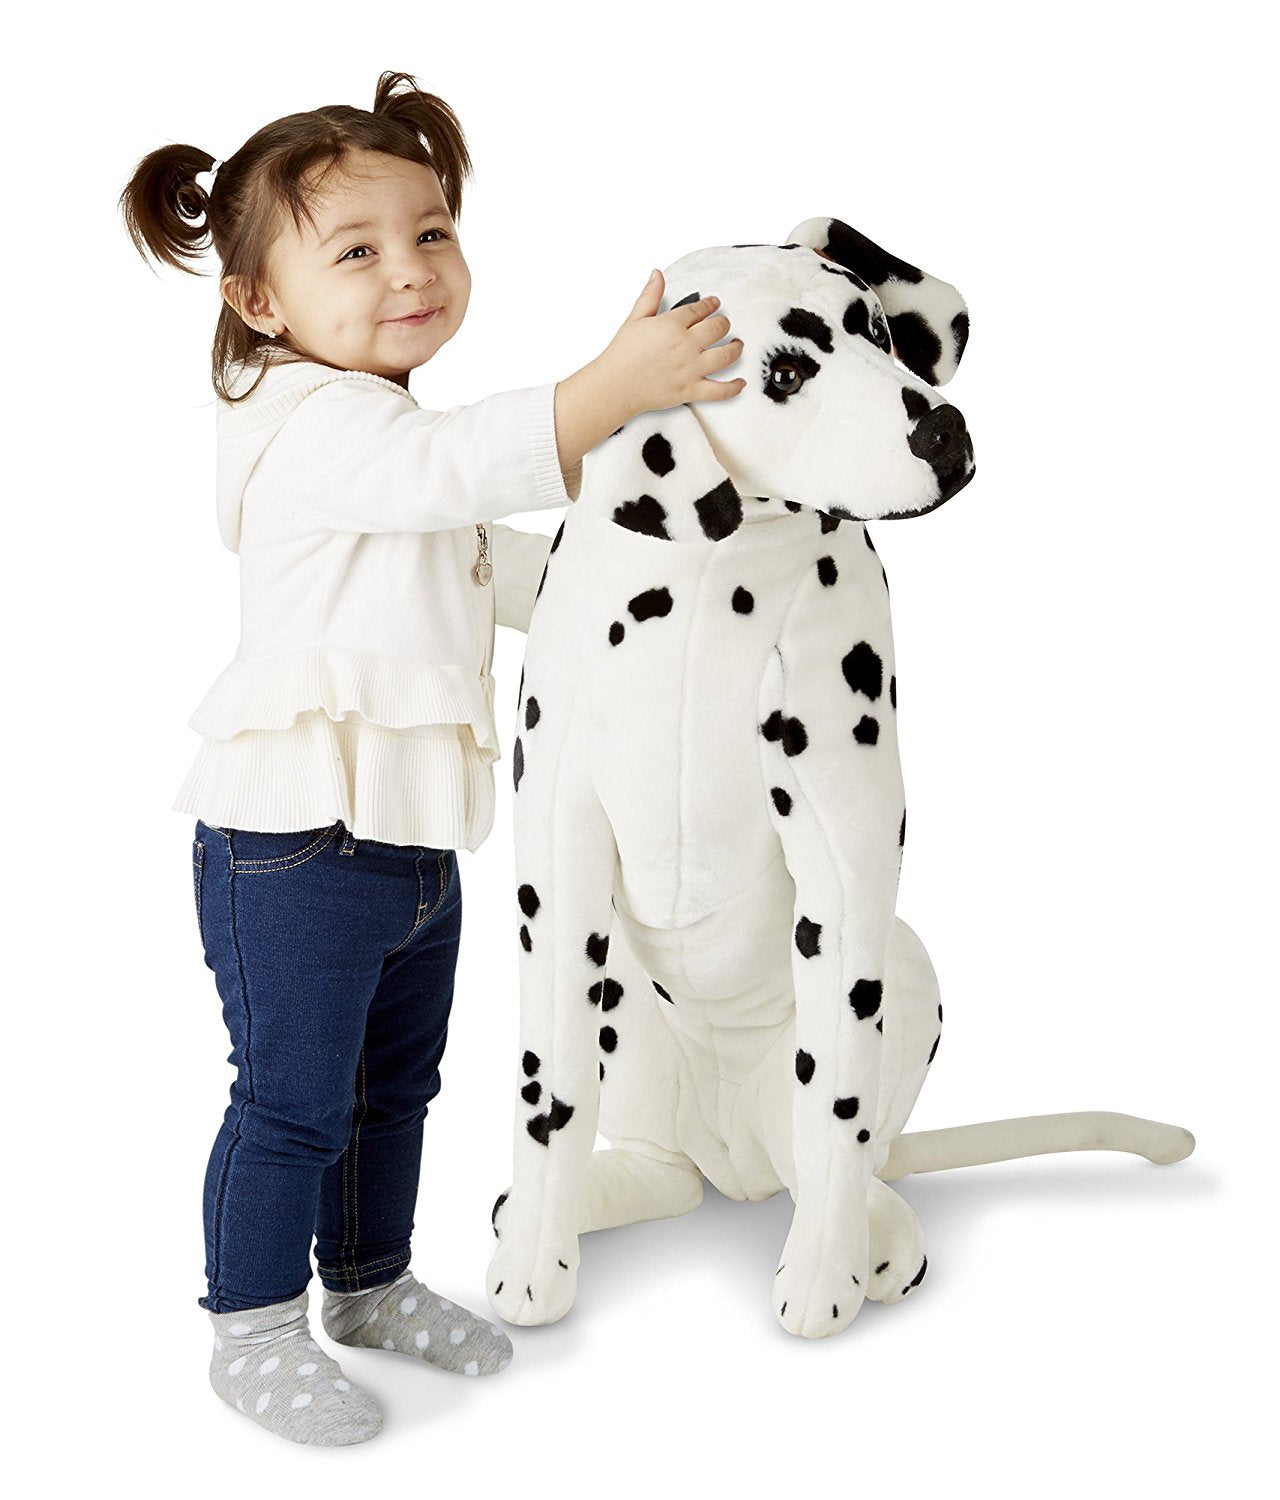 Melissa & Doug - Giant Dalmatian - Lifelike Stuffed Animal Dog